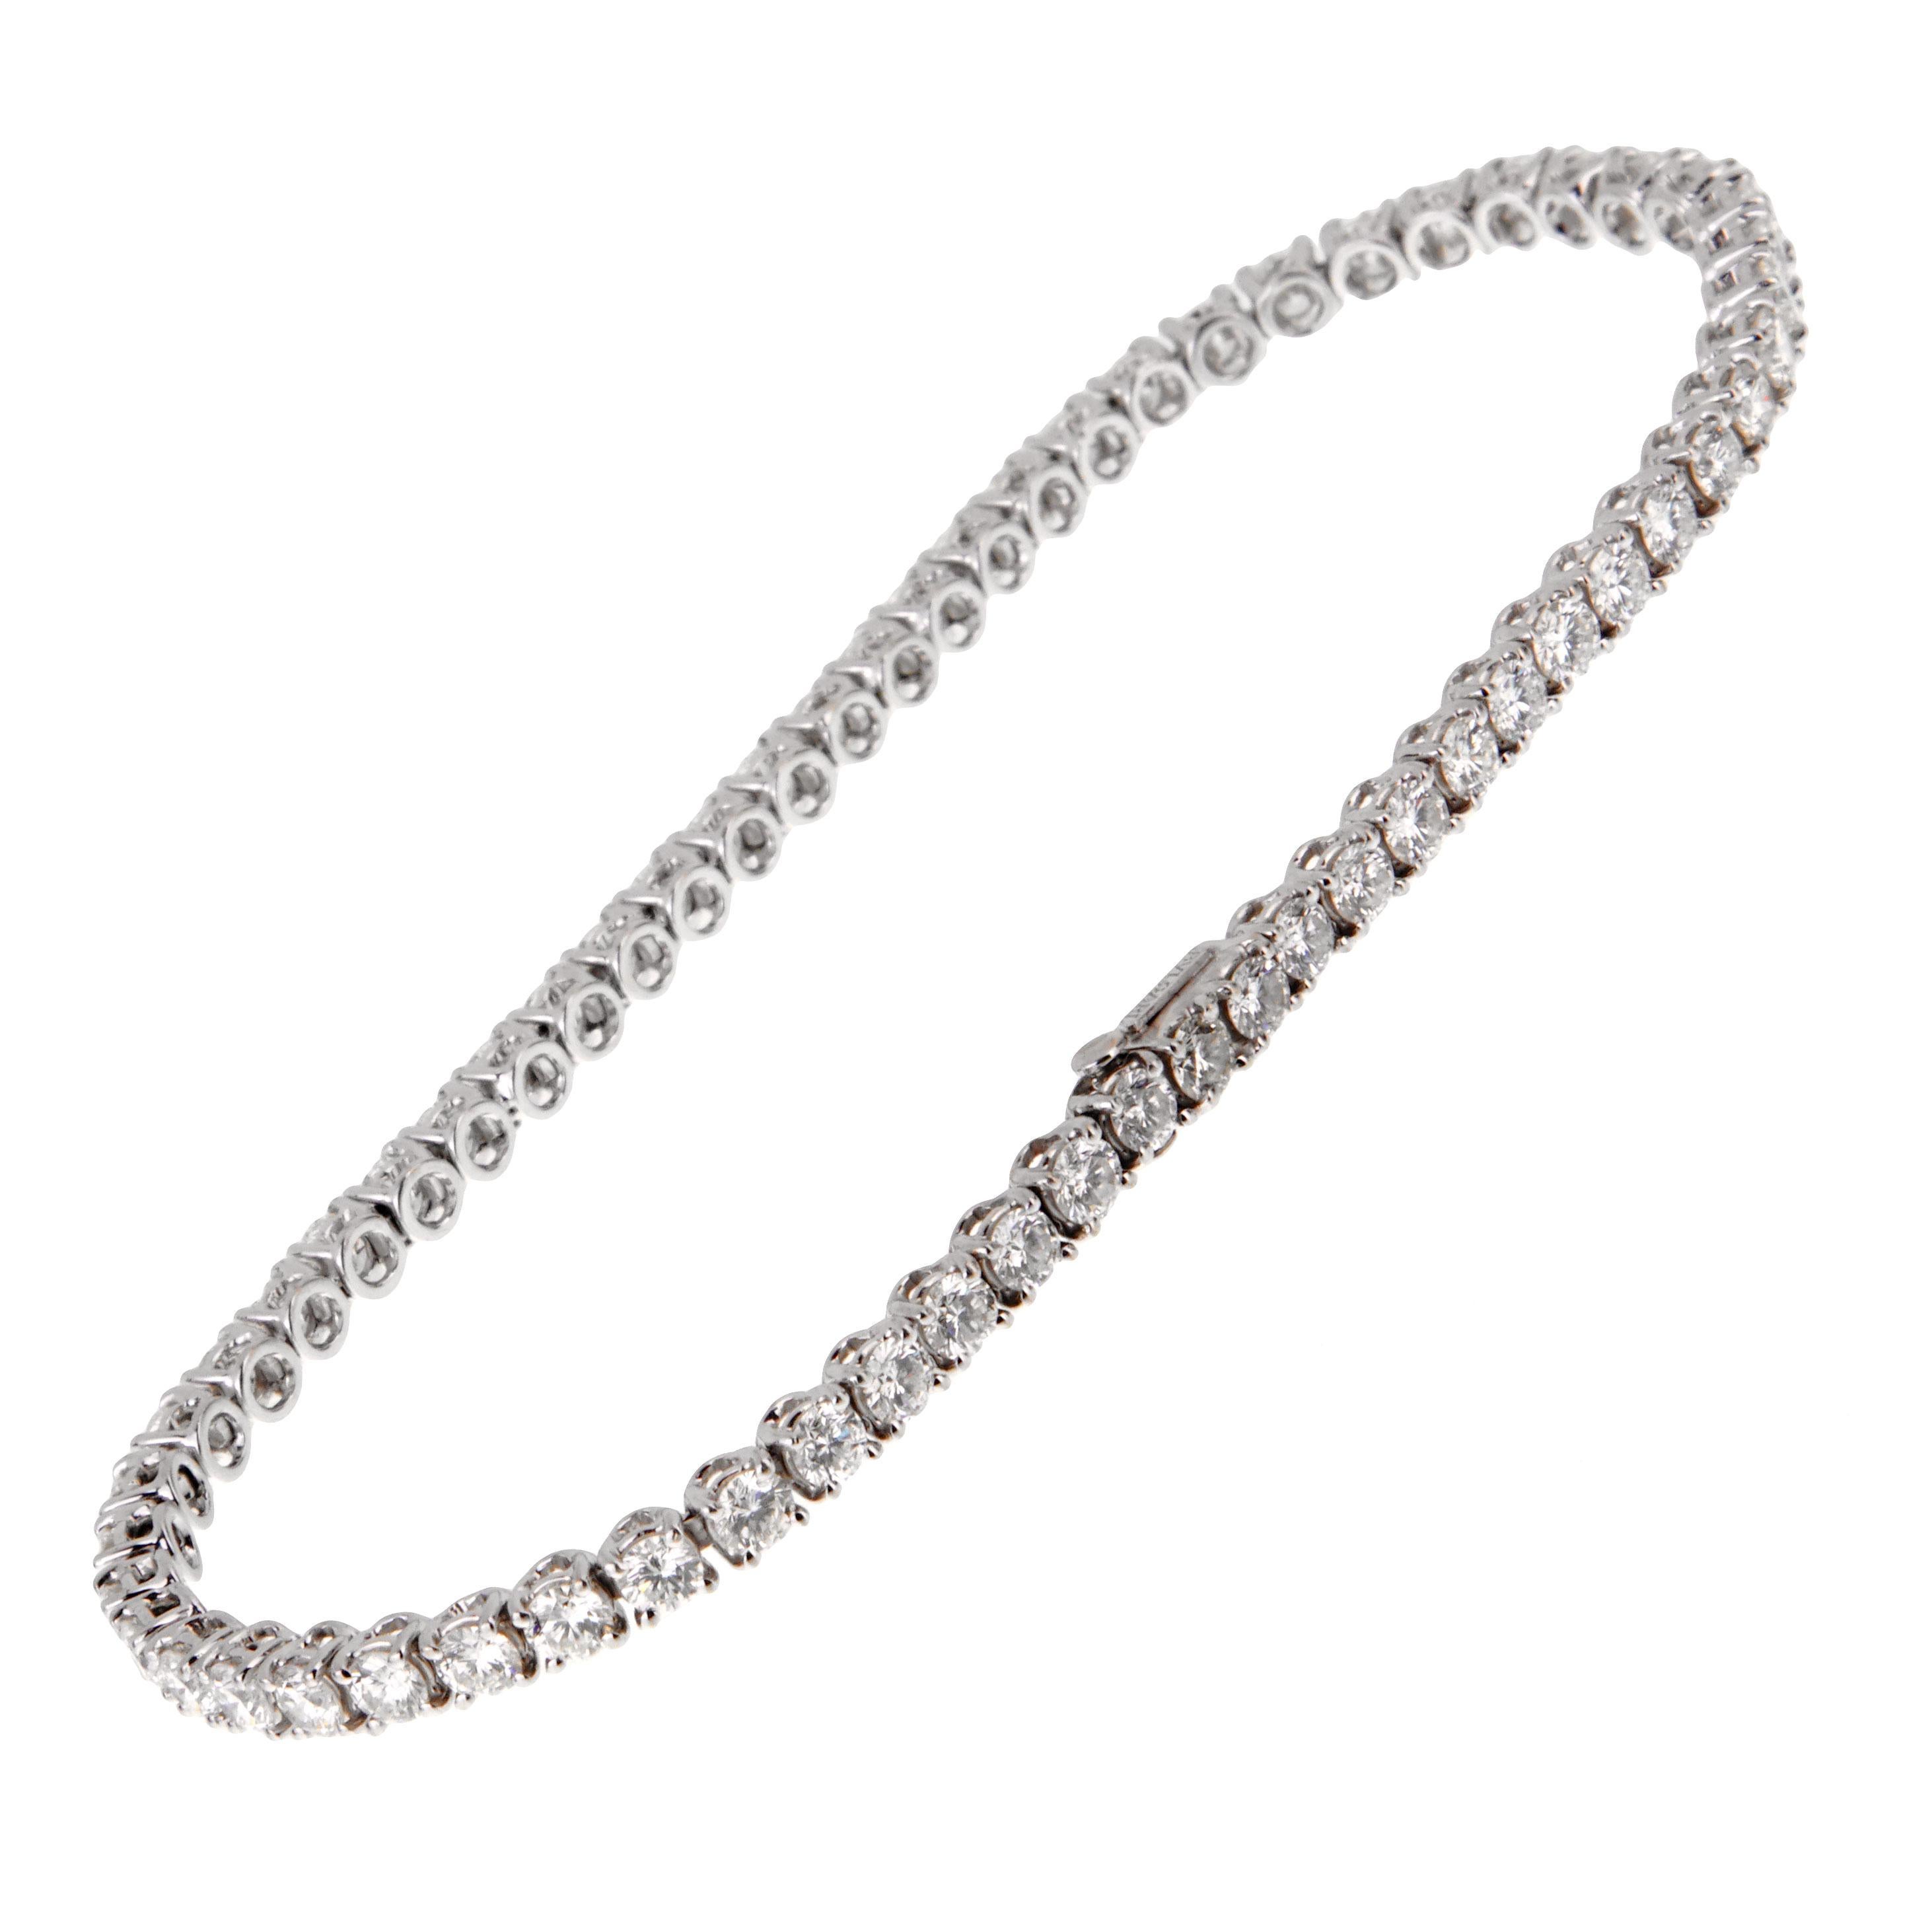 Ce bracelet tennis chic en diamants de Bulgari présente 61 des plus beaux diamants ronds de taille brillant, sertis dans un or blanc 18 carats chatoyant. Le bracelet mesure 7 3/4